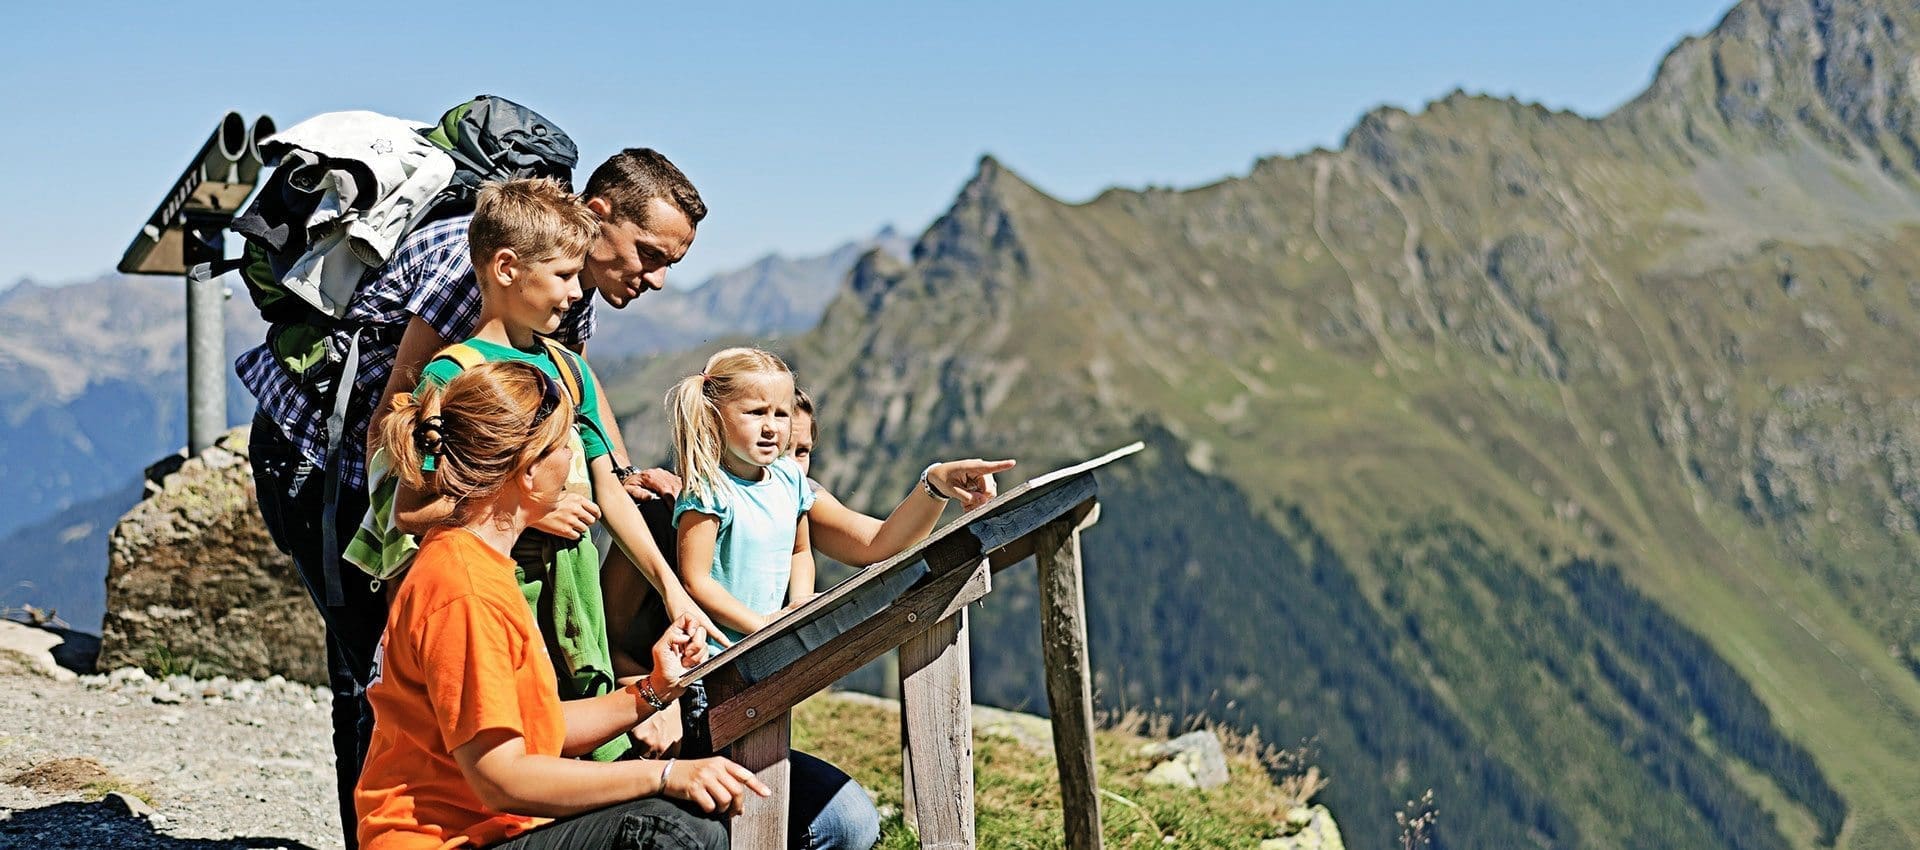 Familienurlaub im Montafon, Vorarlberg - Wandern mit Kindern